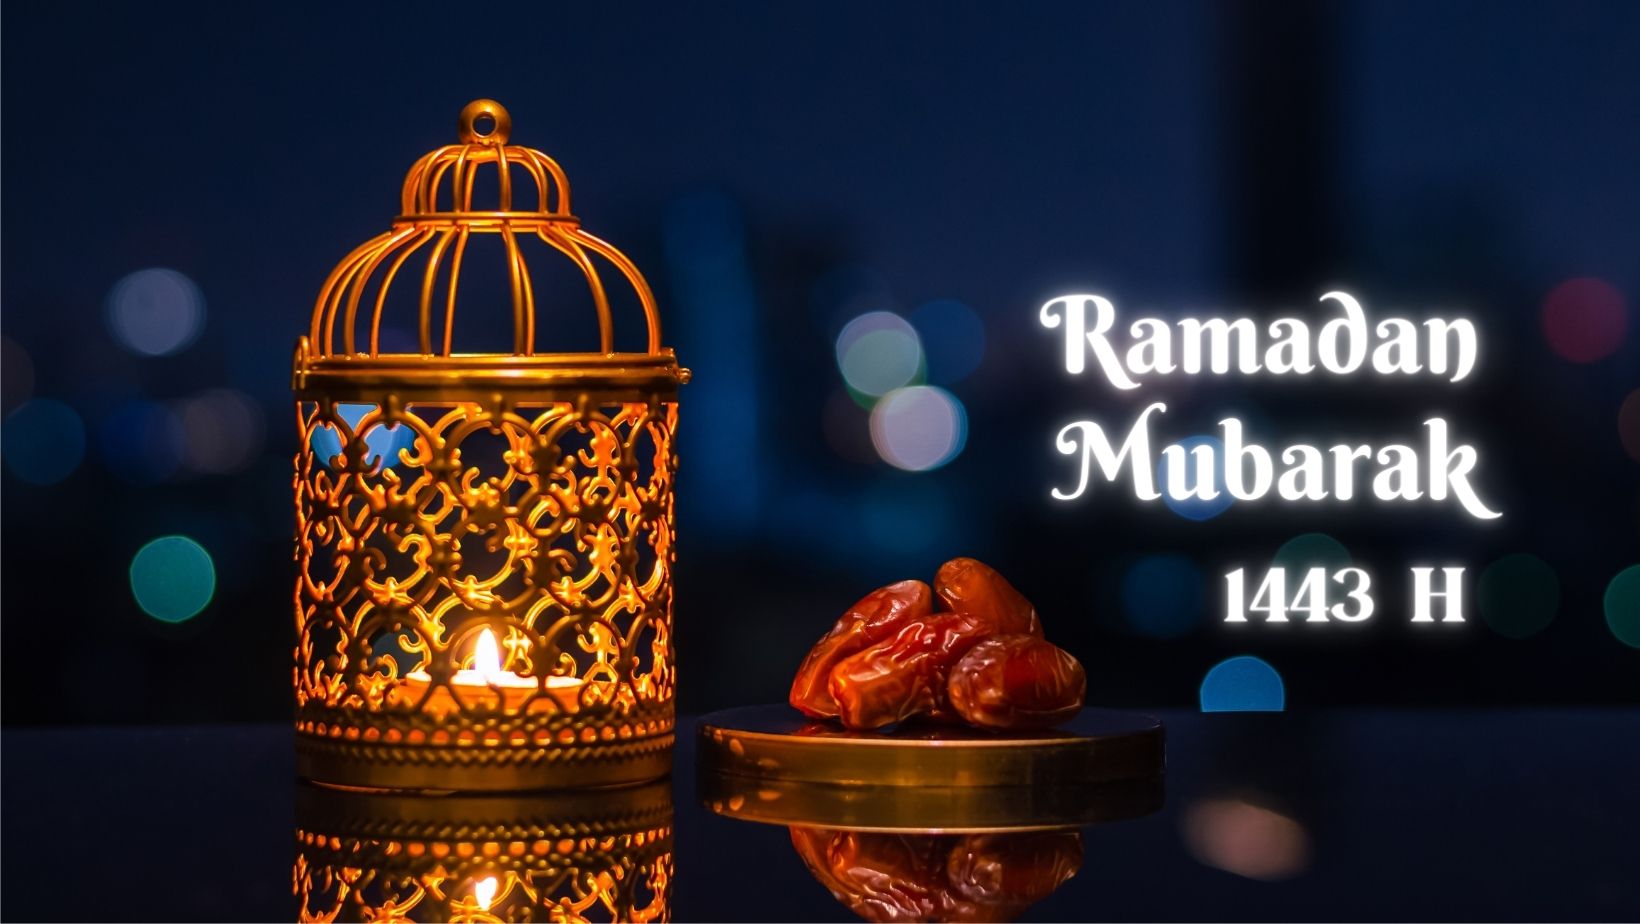 Beautiful Ramadan Mubarak Facebook Cover Photos